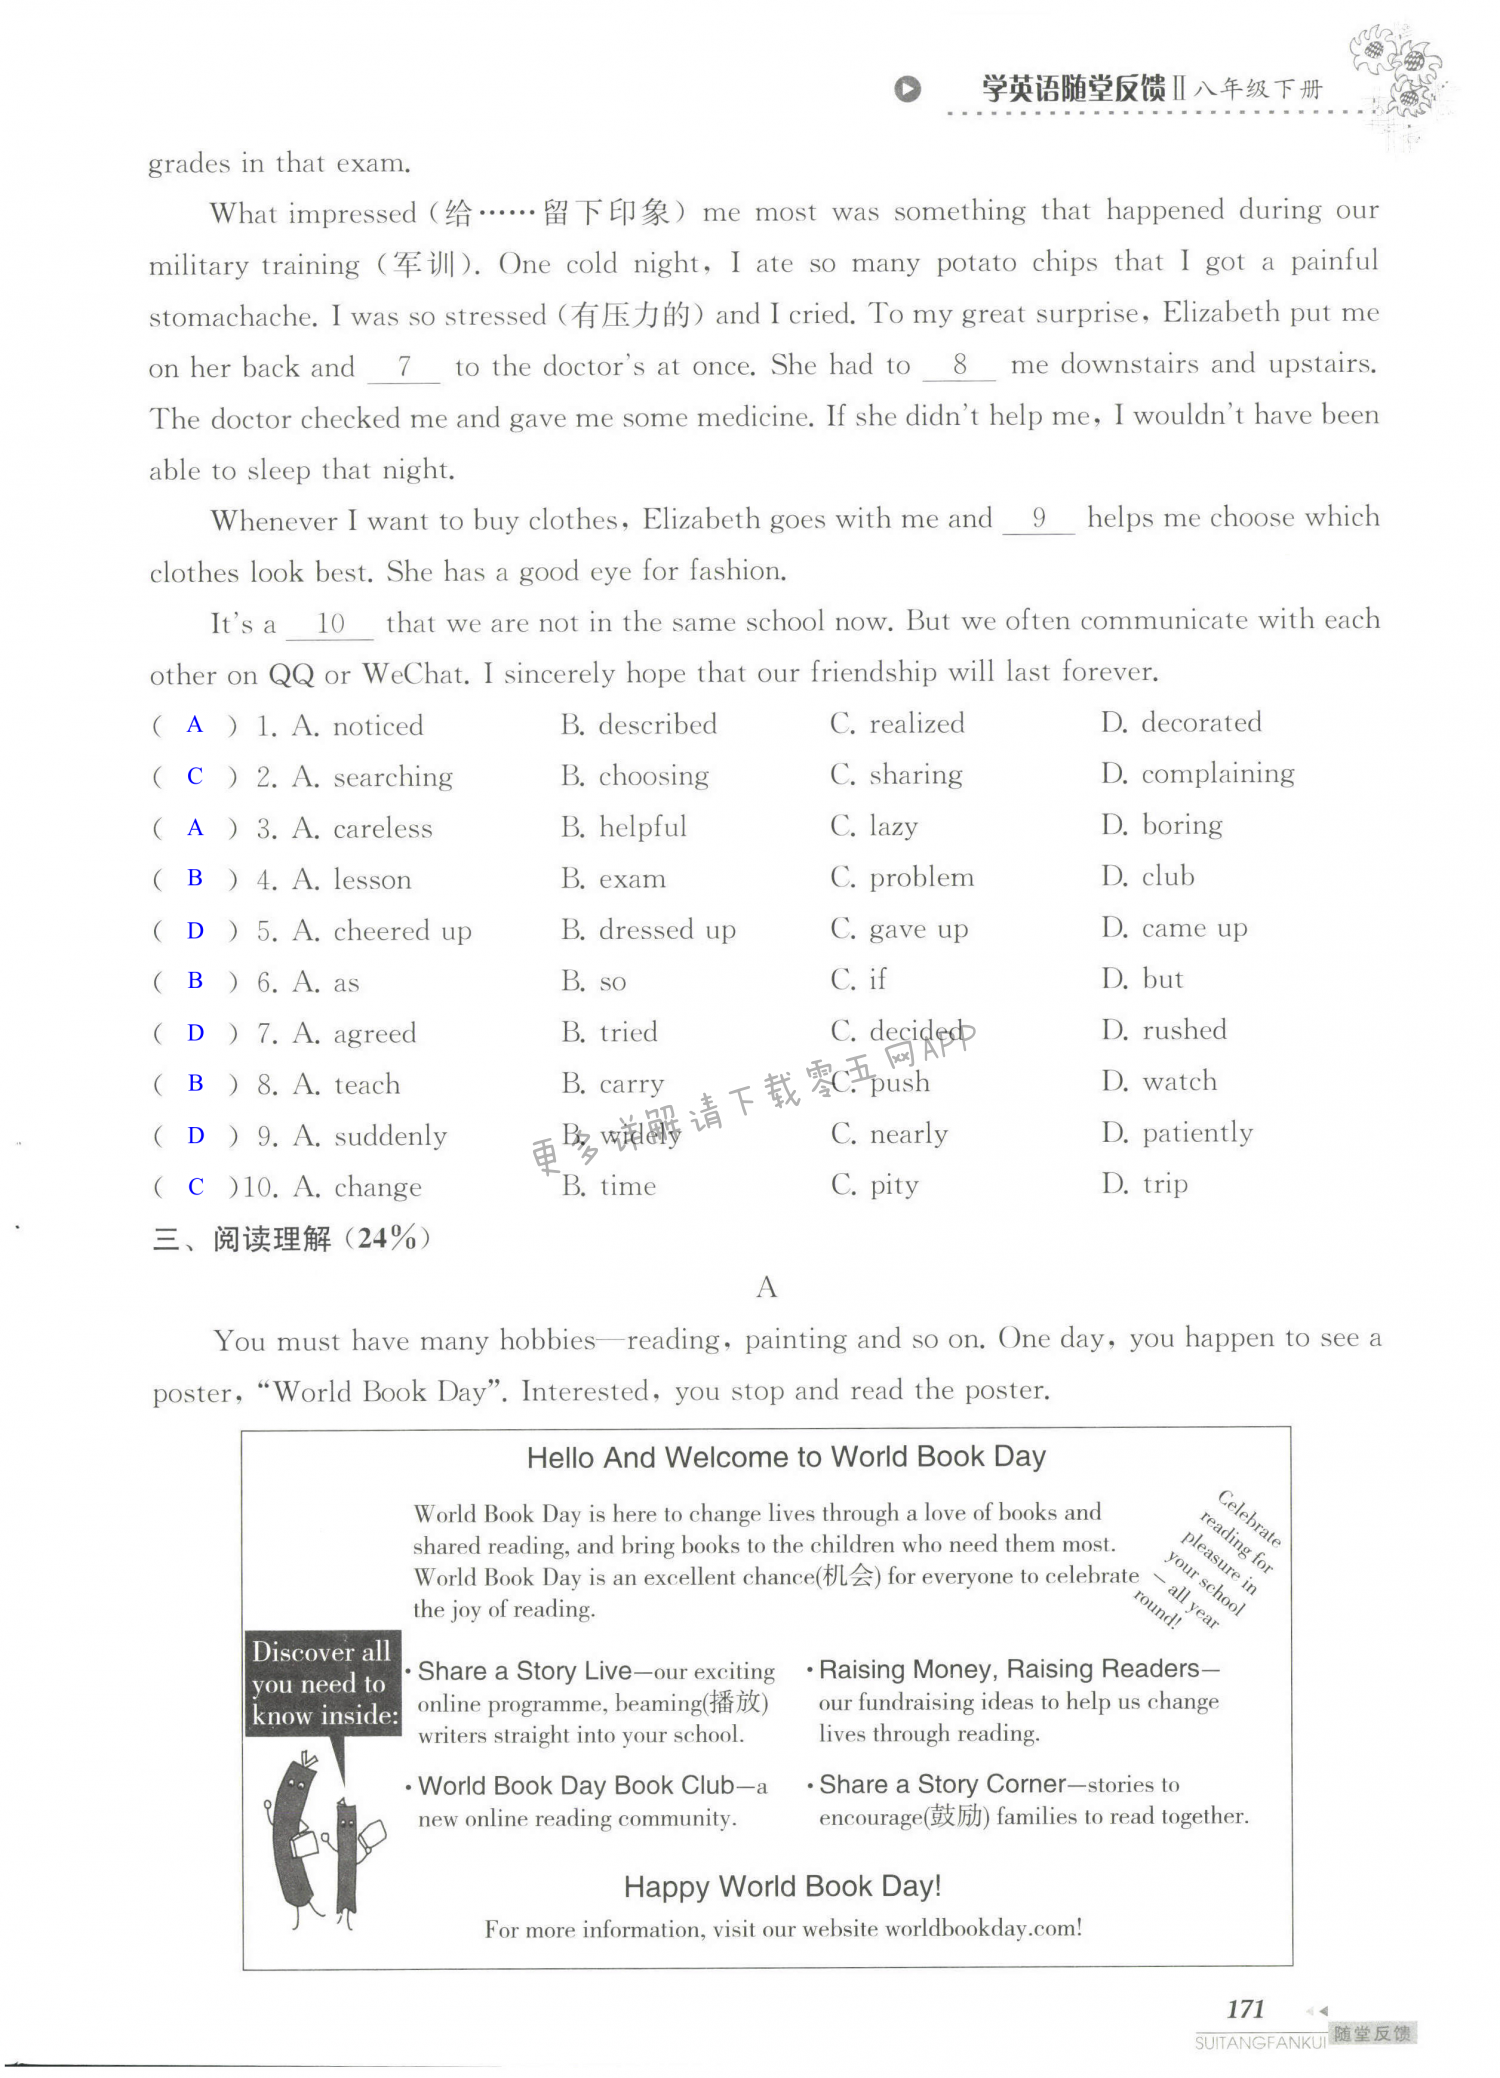 单元综合测试卷 Test for Unit 4 of 8B - 第171页